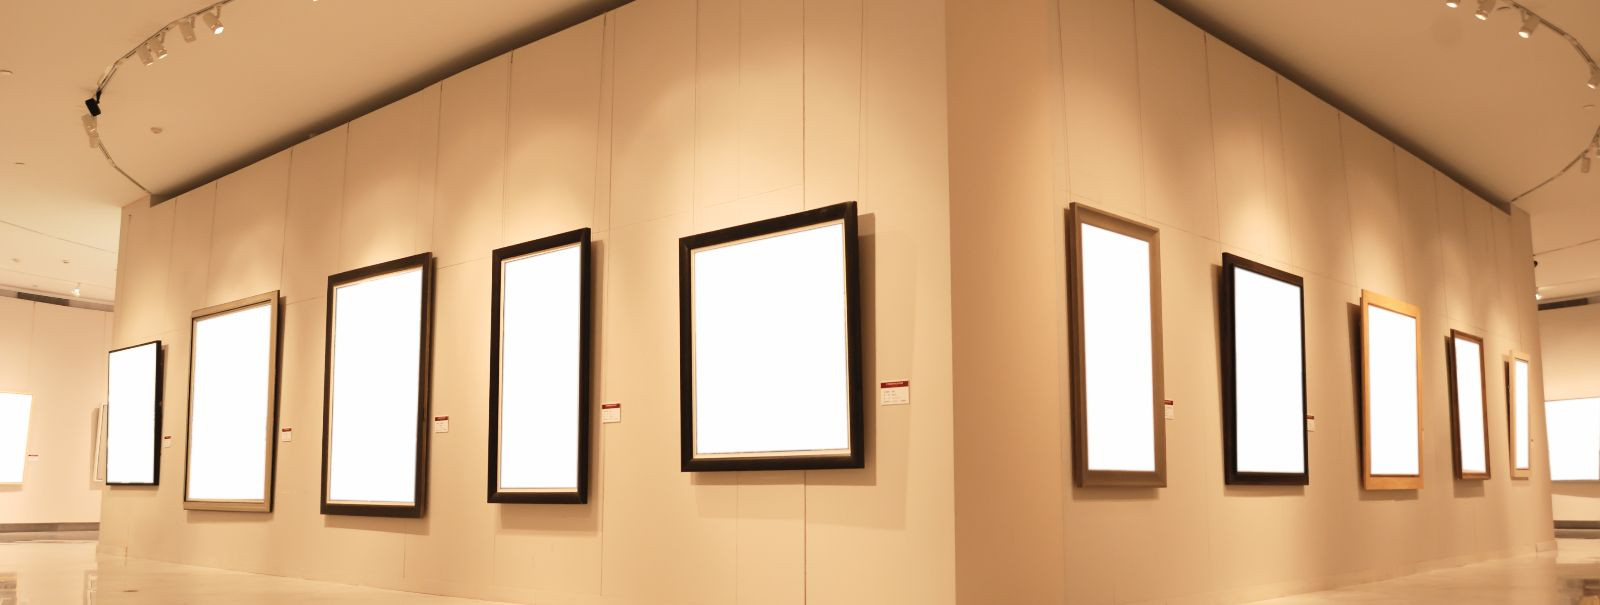 LED-raamid on uuenduslik lahendus kunsti esitlemiseks, mis ühendavad endas valgusdioodide (LED) tehnoloogiat, et tõsta kunstiteoste visuaalset mõju. Need raamid